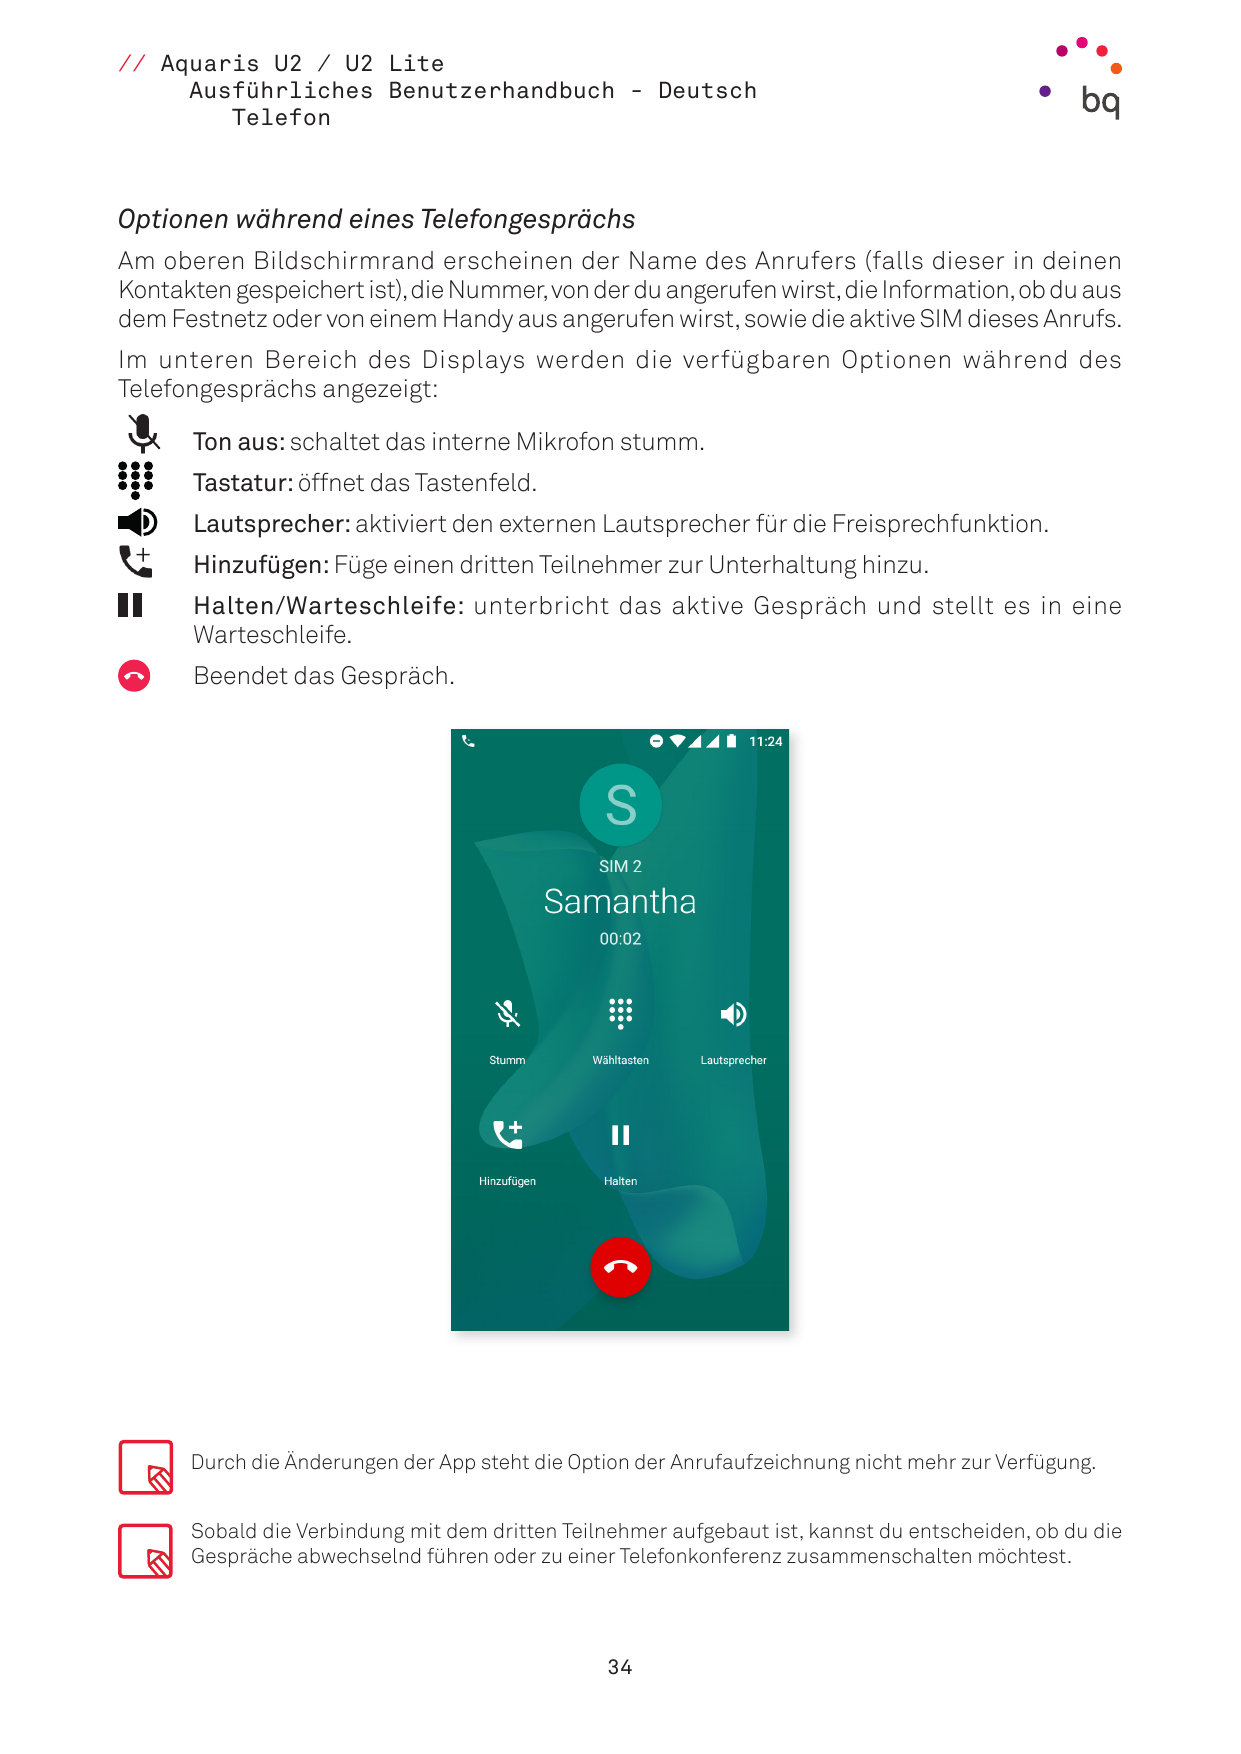 // Aquaris U2 / U2 LiteAusführliches Benutzerhandbuch - DeutschTelefonOptionen während eines TelefongesprächsAm oberen Bildschir